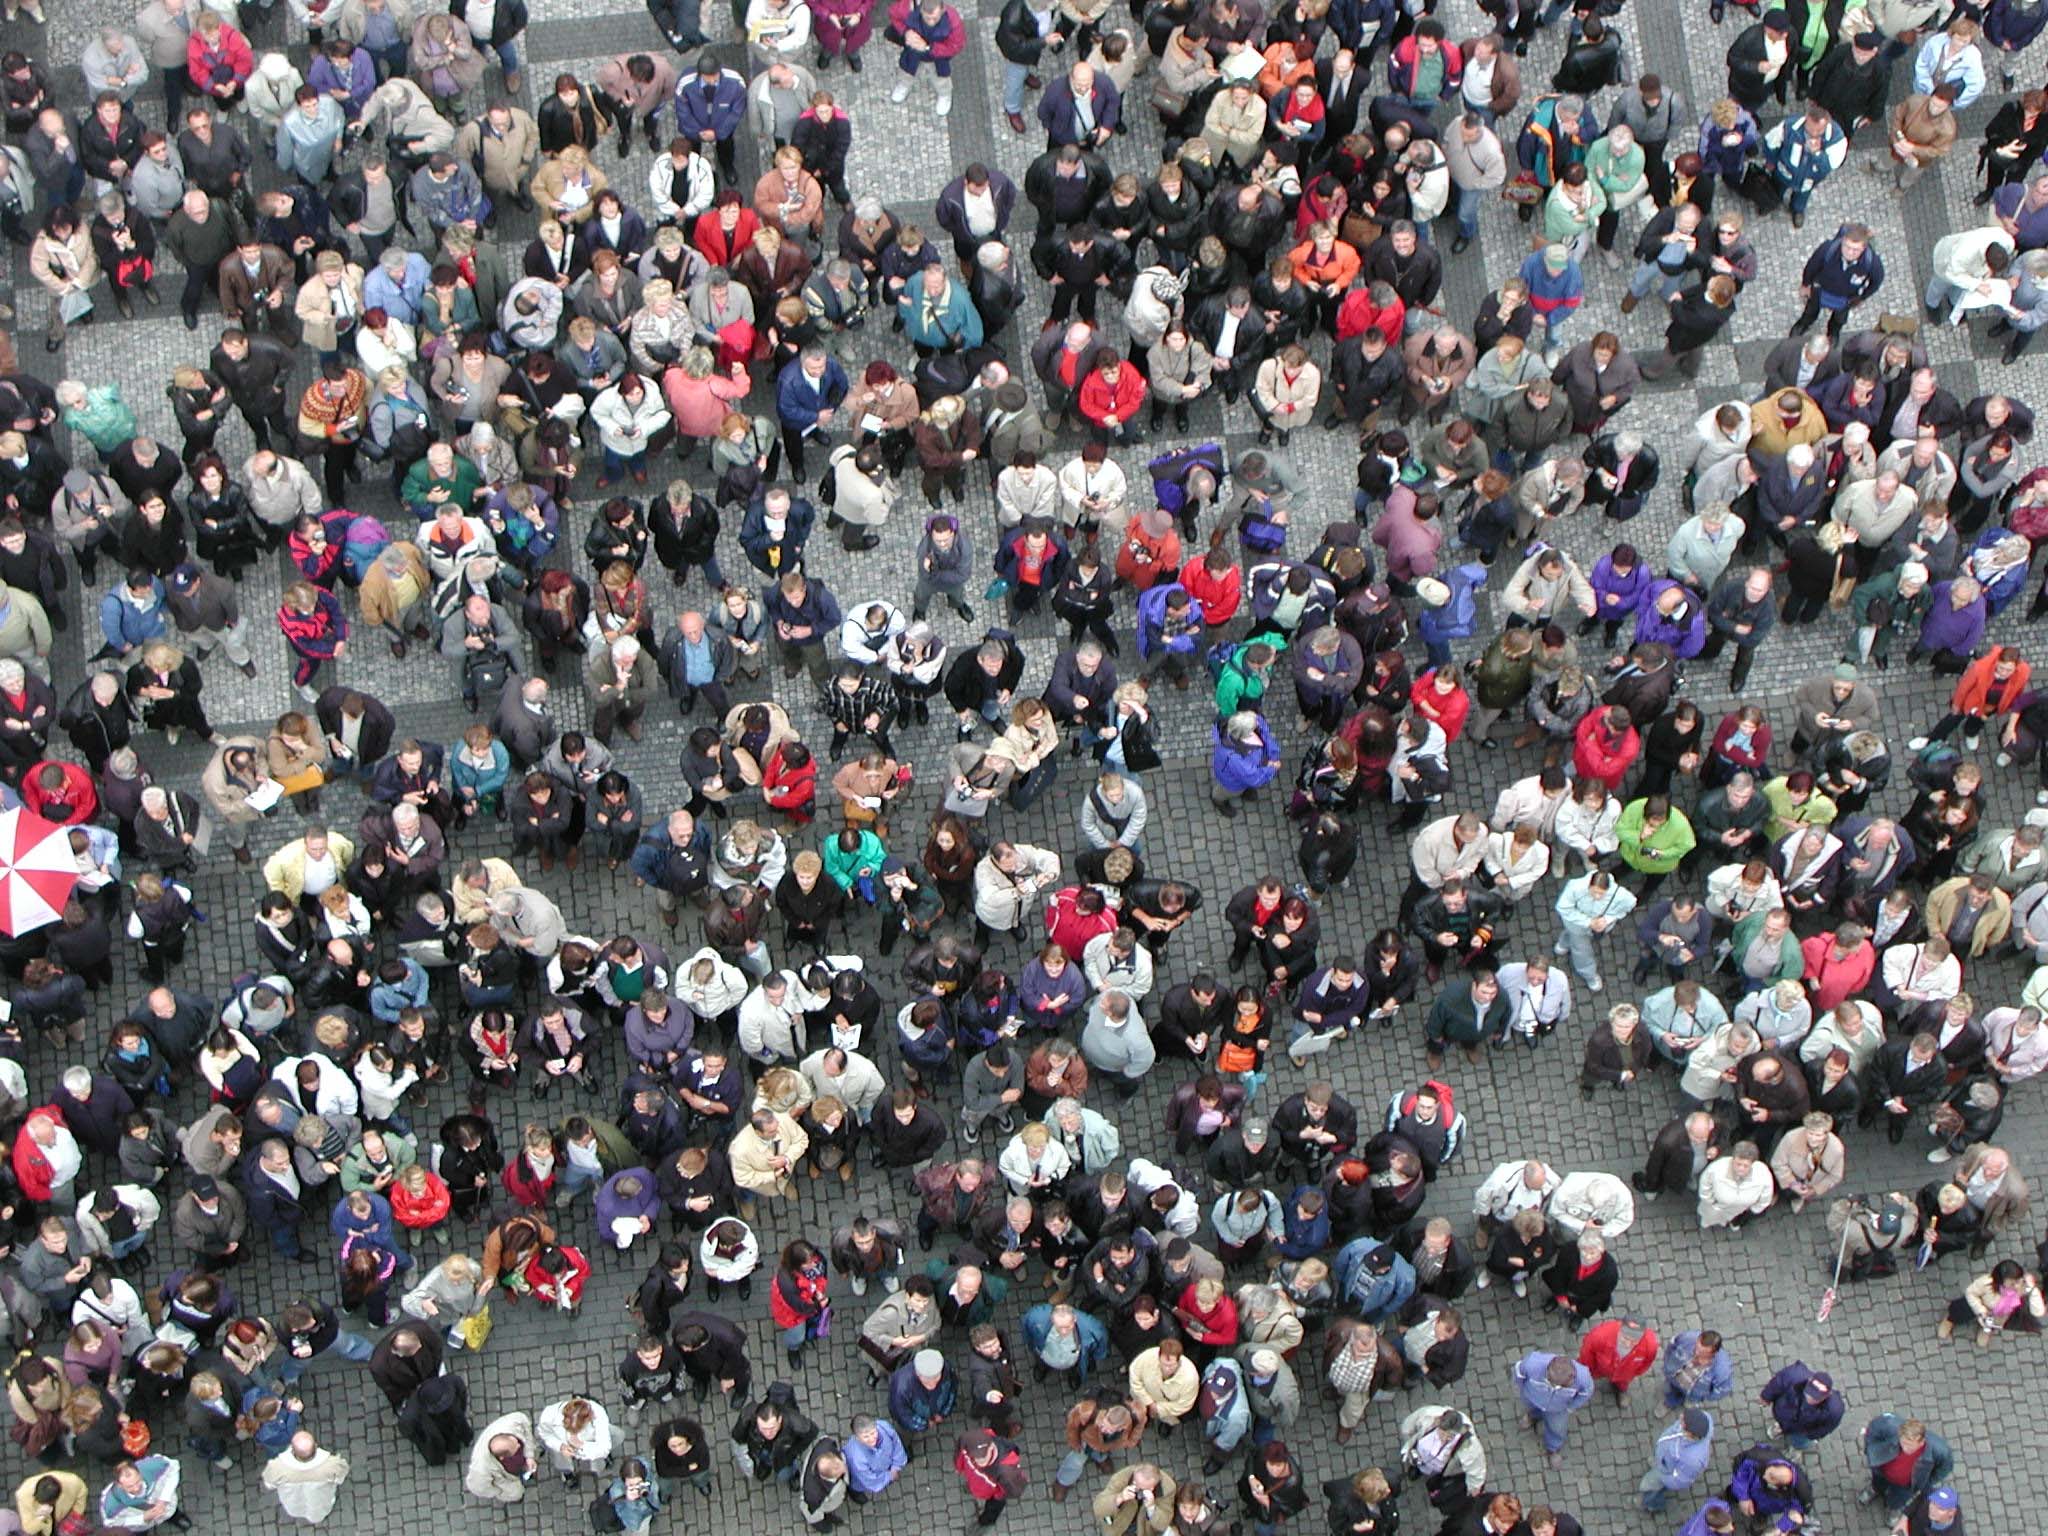 Menschenmenge - Foto: Walter Reich - pixelio.de